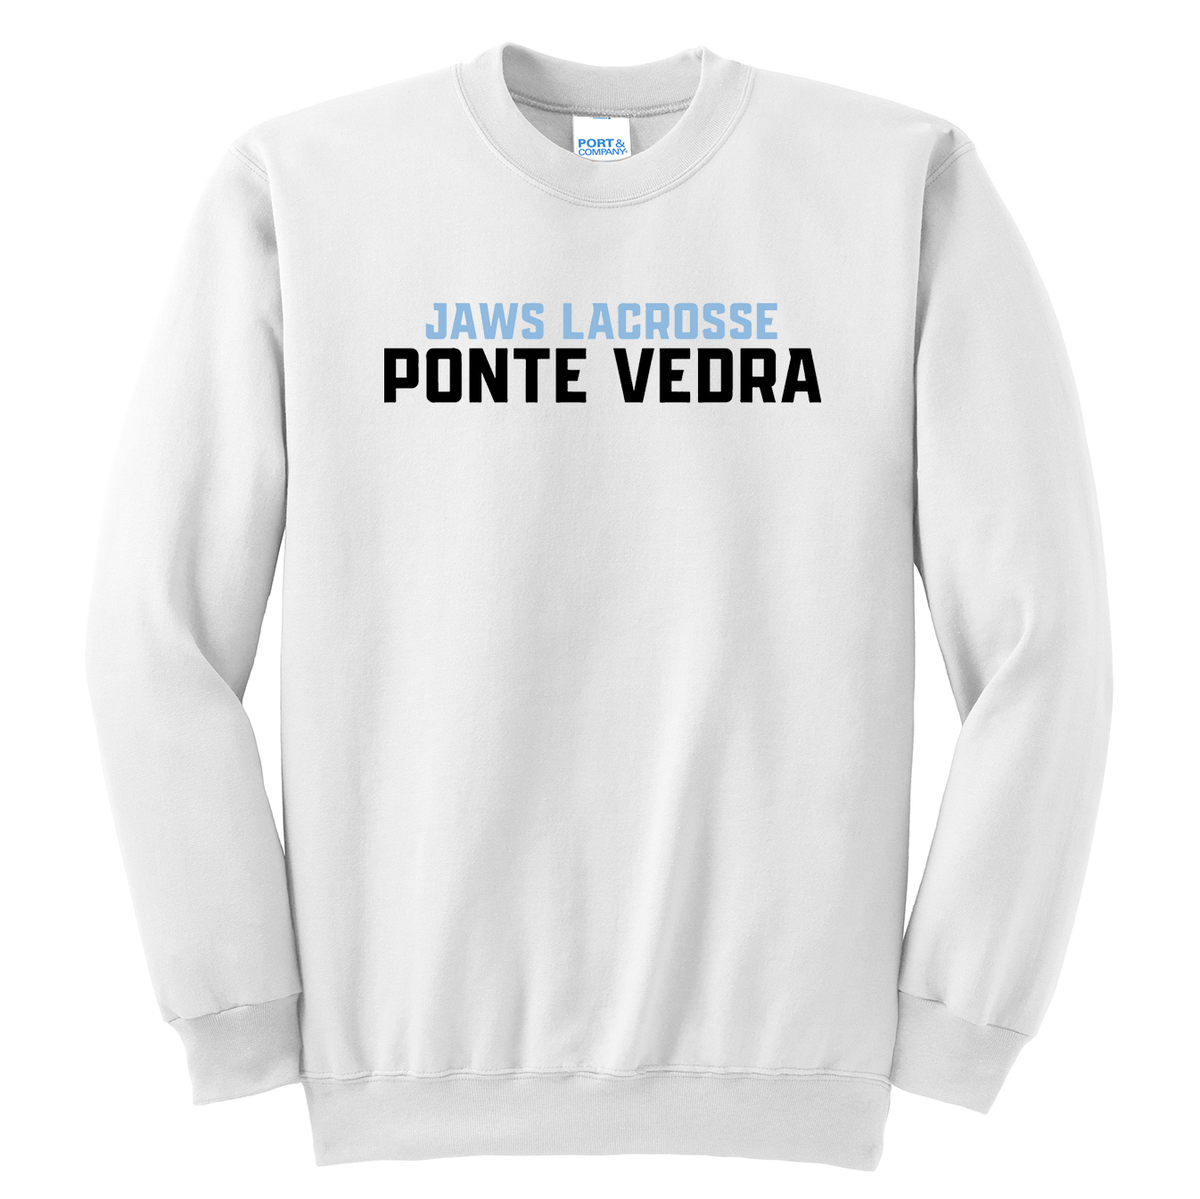 Ponte Vedra JAWS Lacrosse Crew Neck Sweater